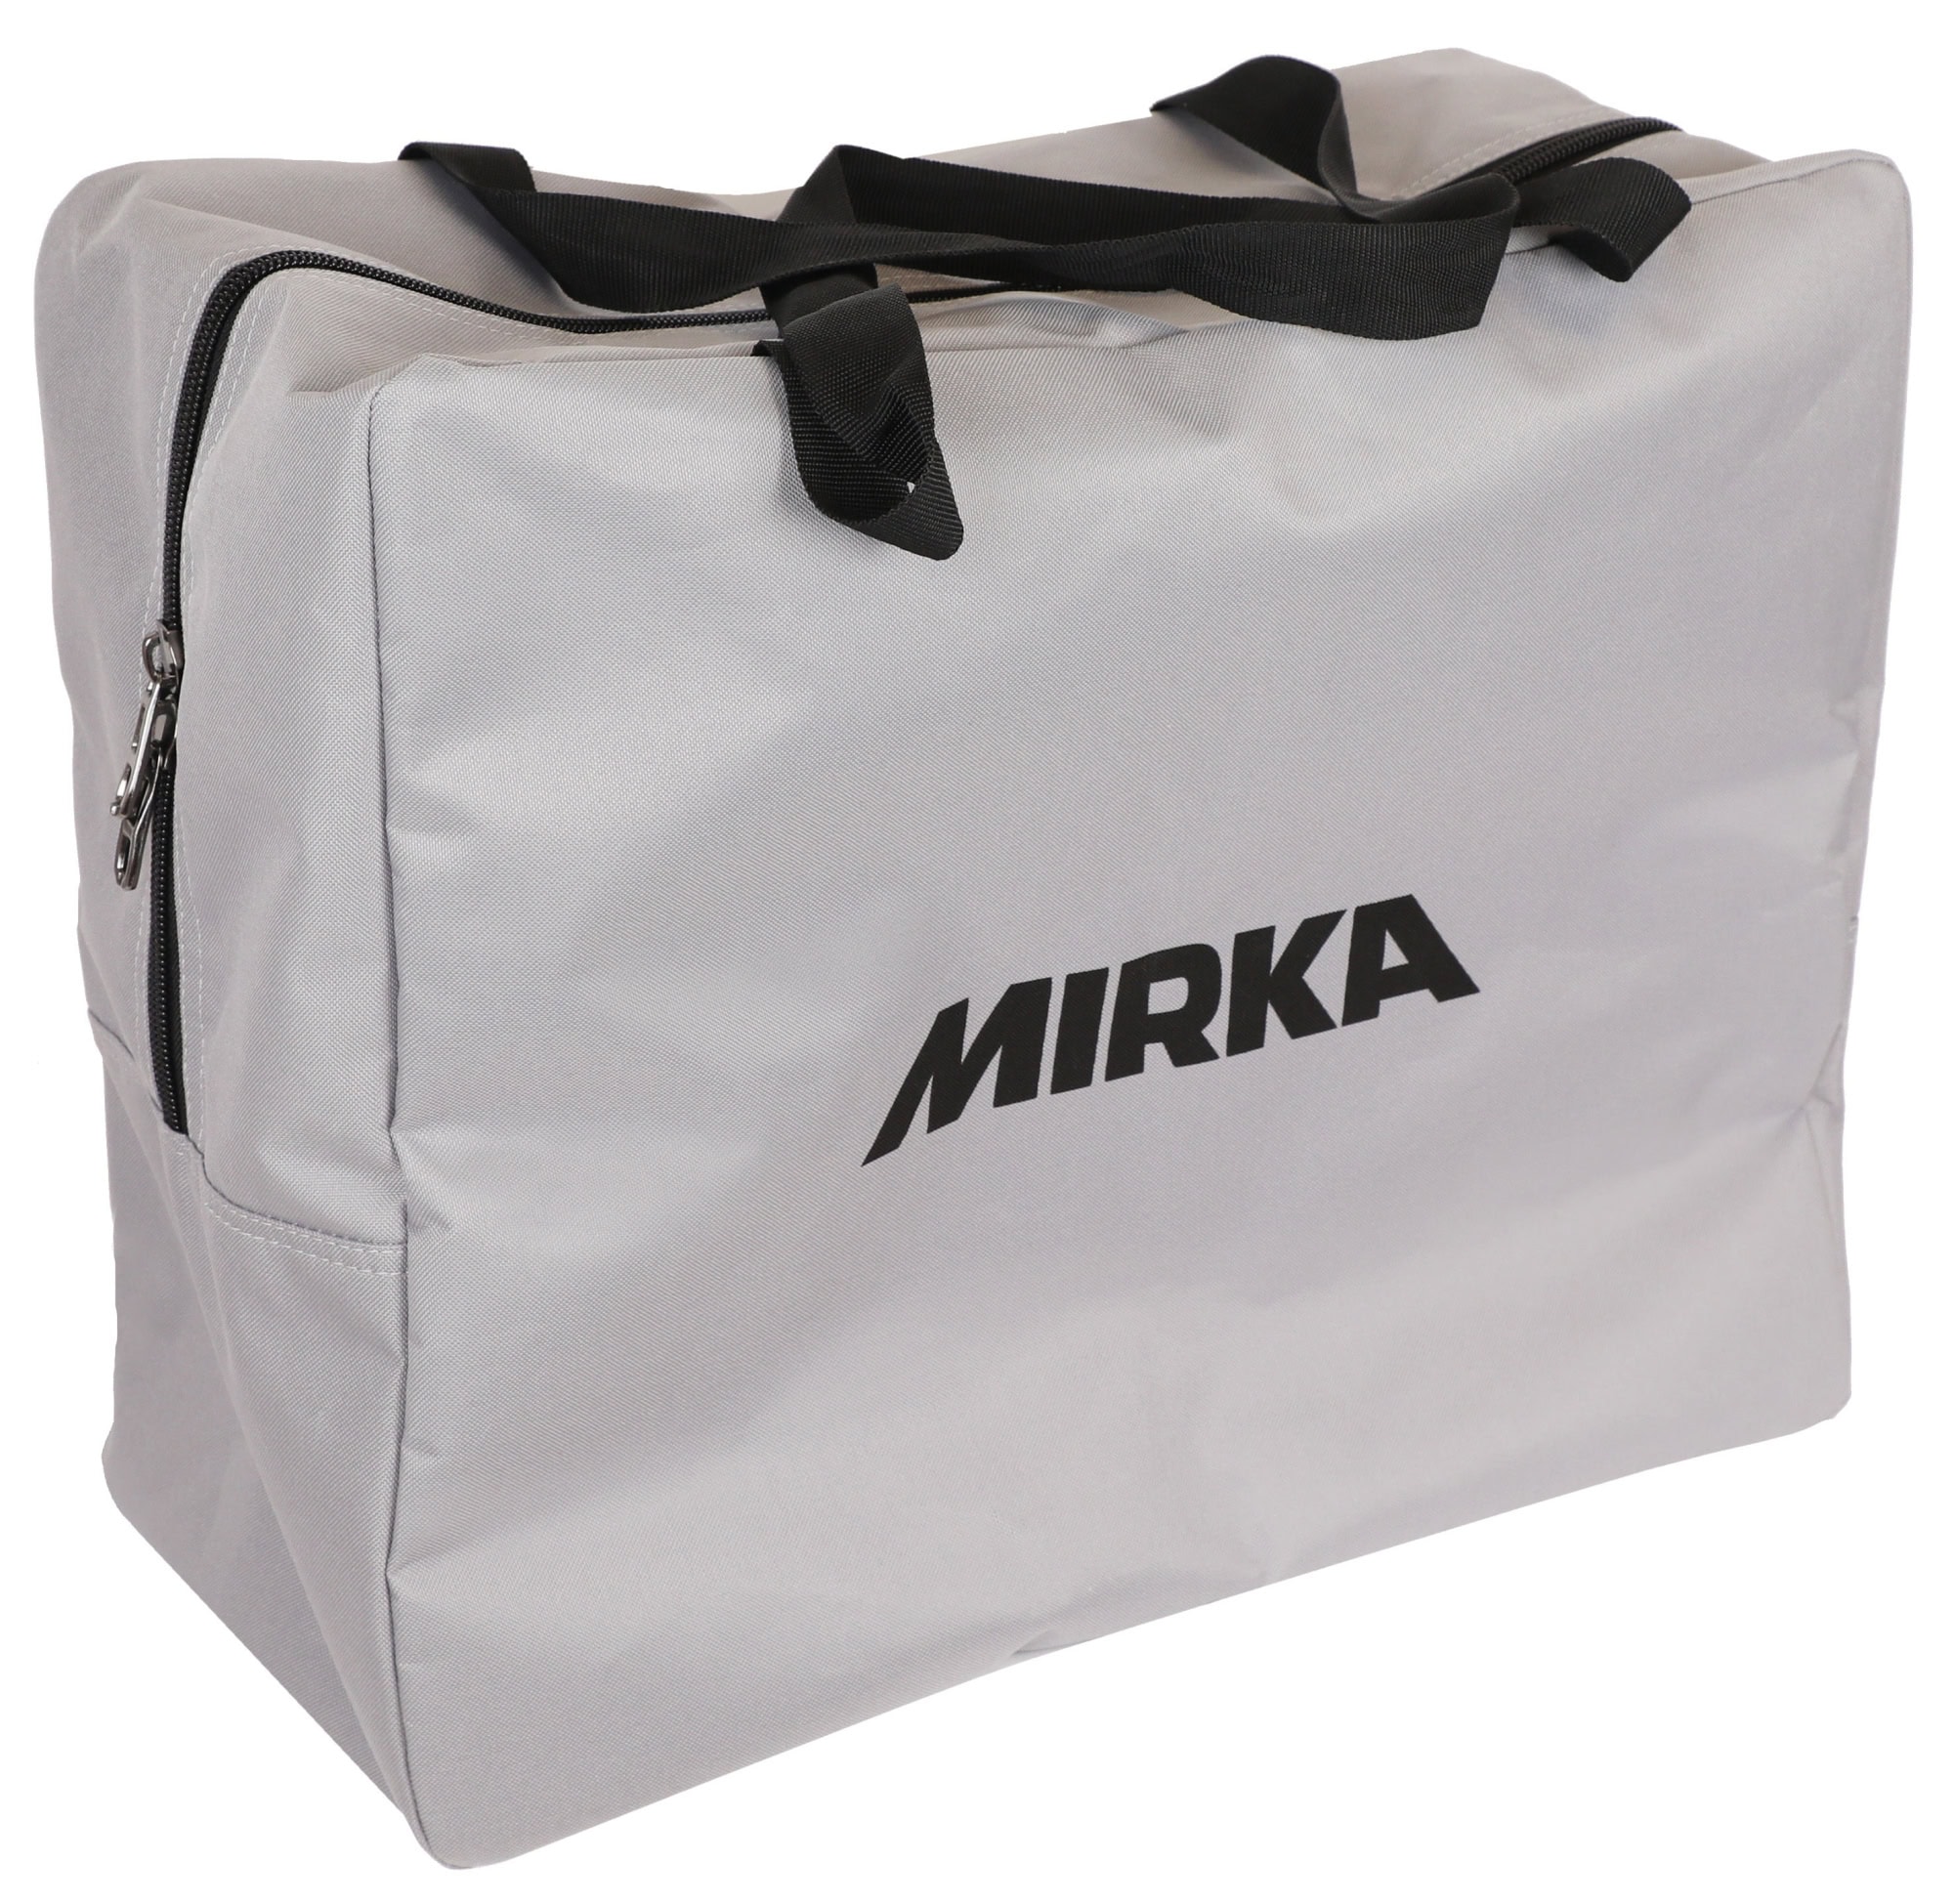 Mirka® Tragetasche für Schläuche 8992515611, Schwarz, Für alle Mirka® Absaugschläuche bis 10 m